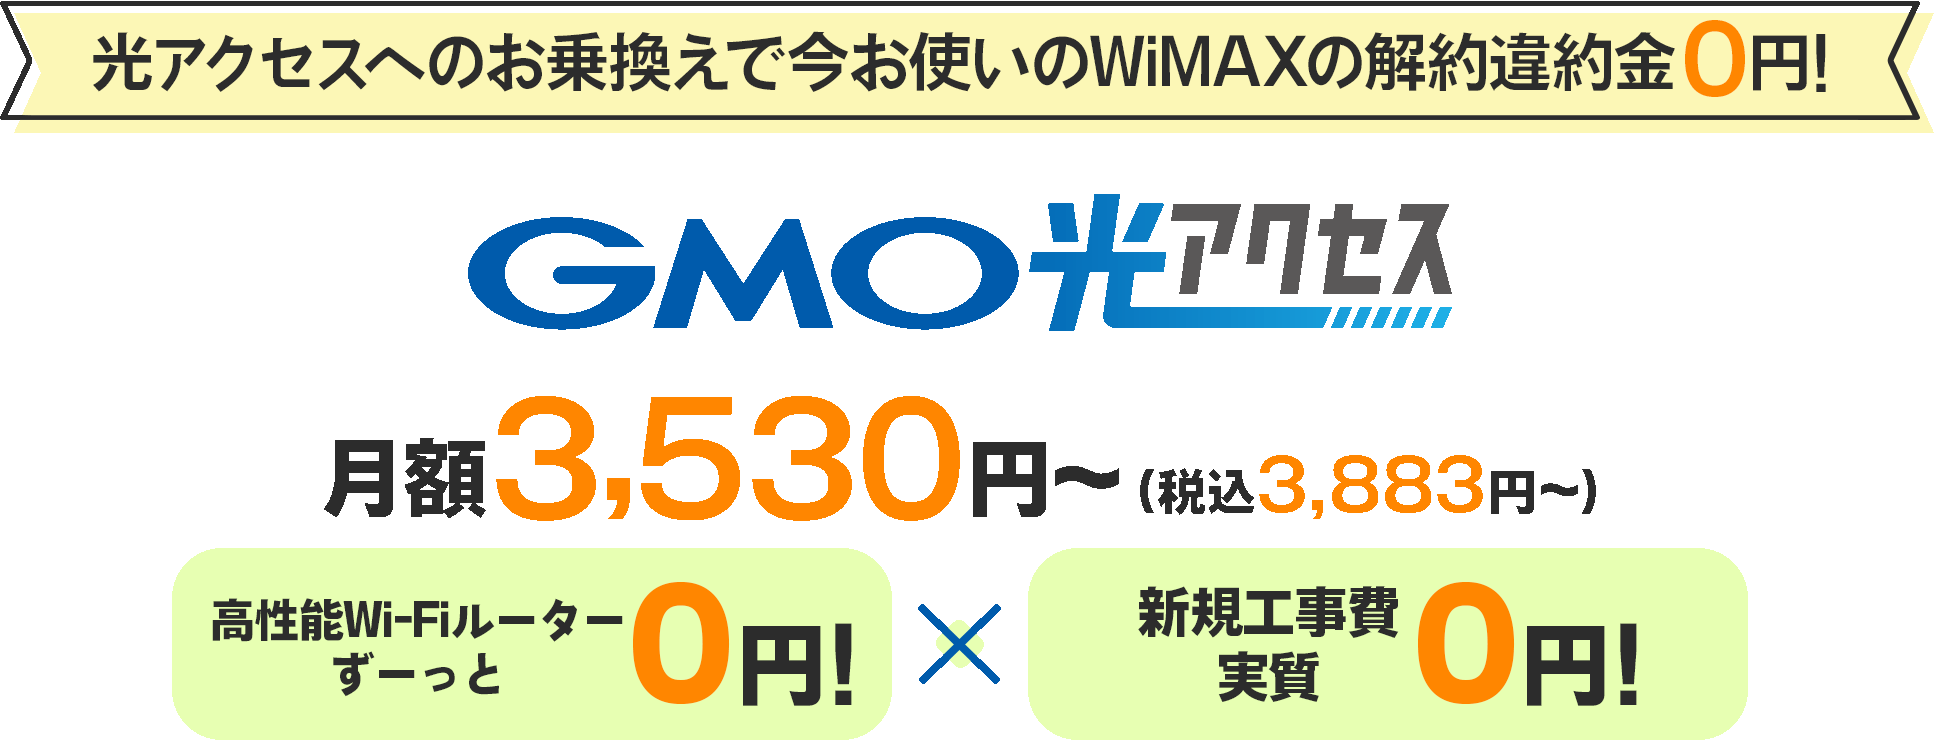 GMO光アクセス